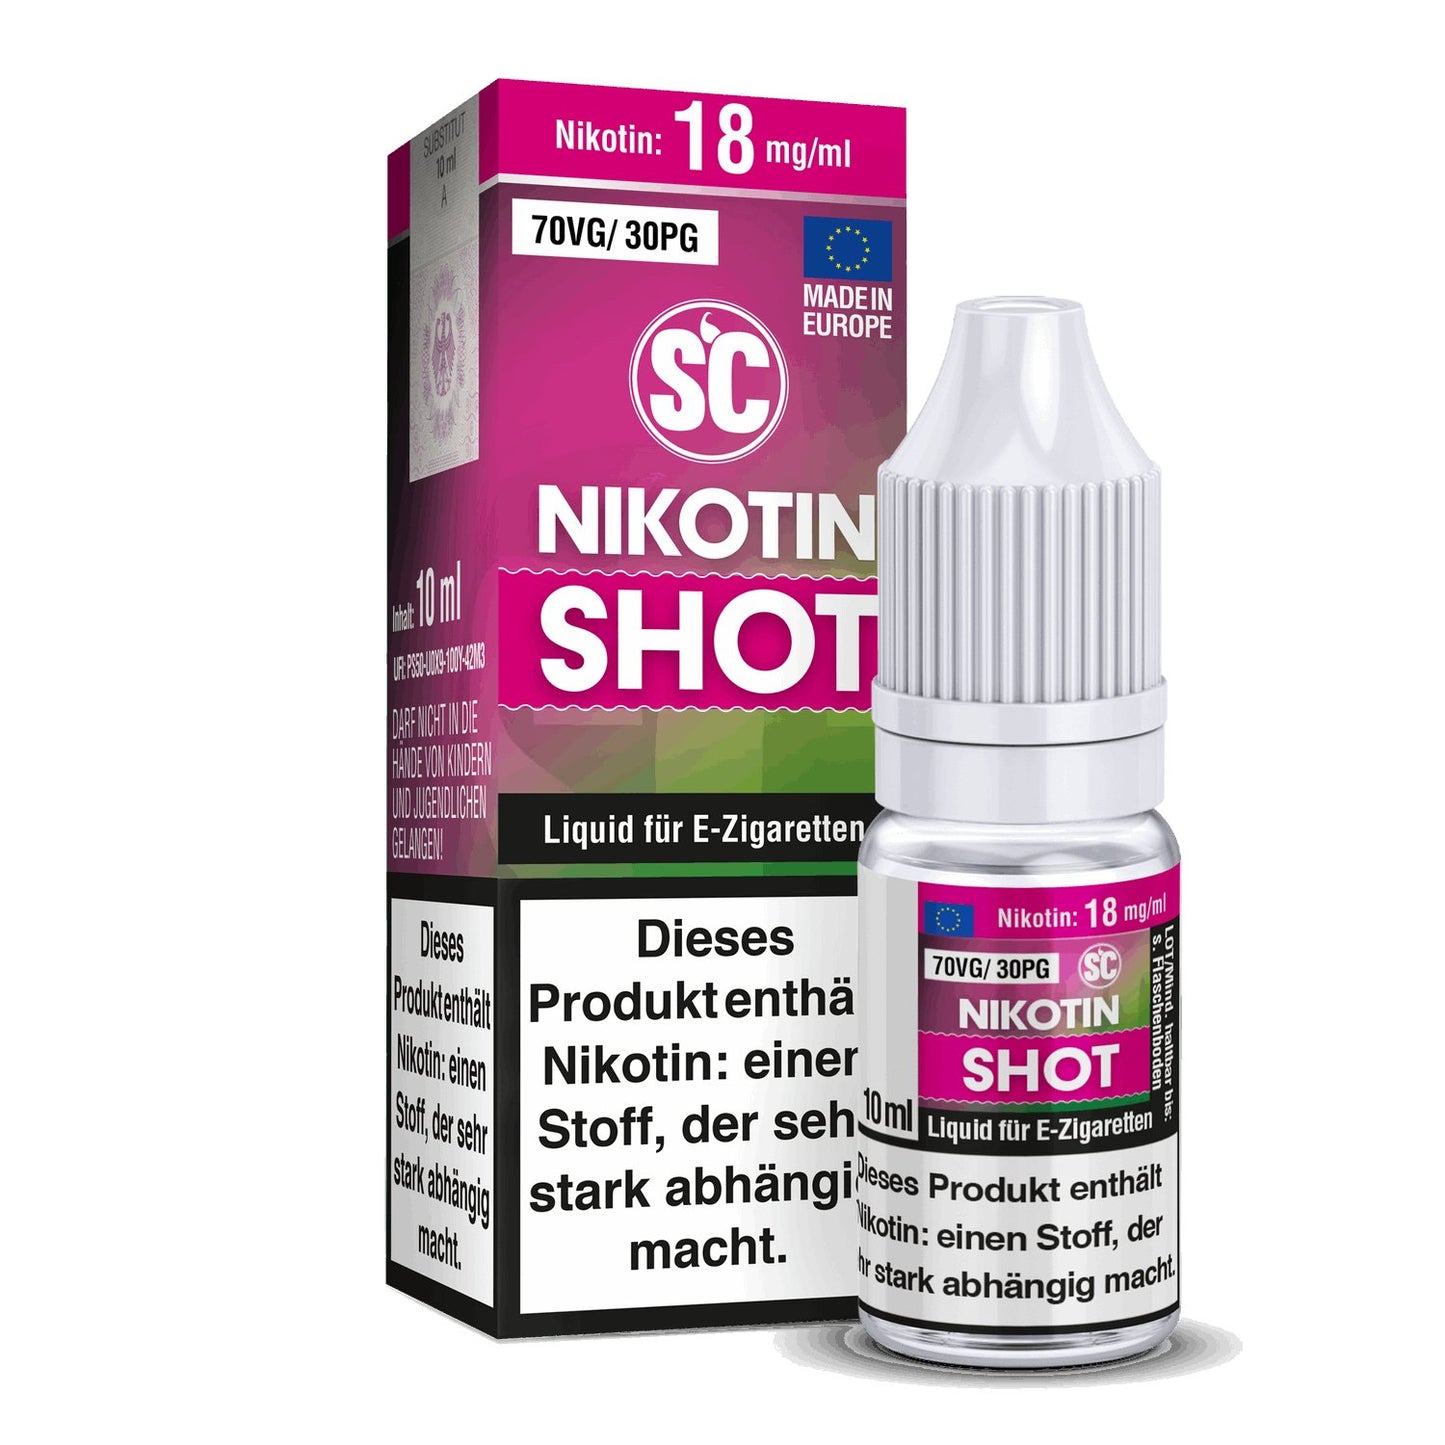 SC - Nikotin Shot - 10ml (70VG/30PG) - 70VG / 30PG 1er Packung 18 mg/ml- Vapes4you